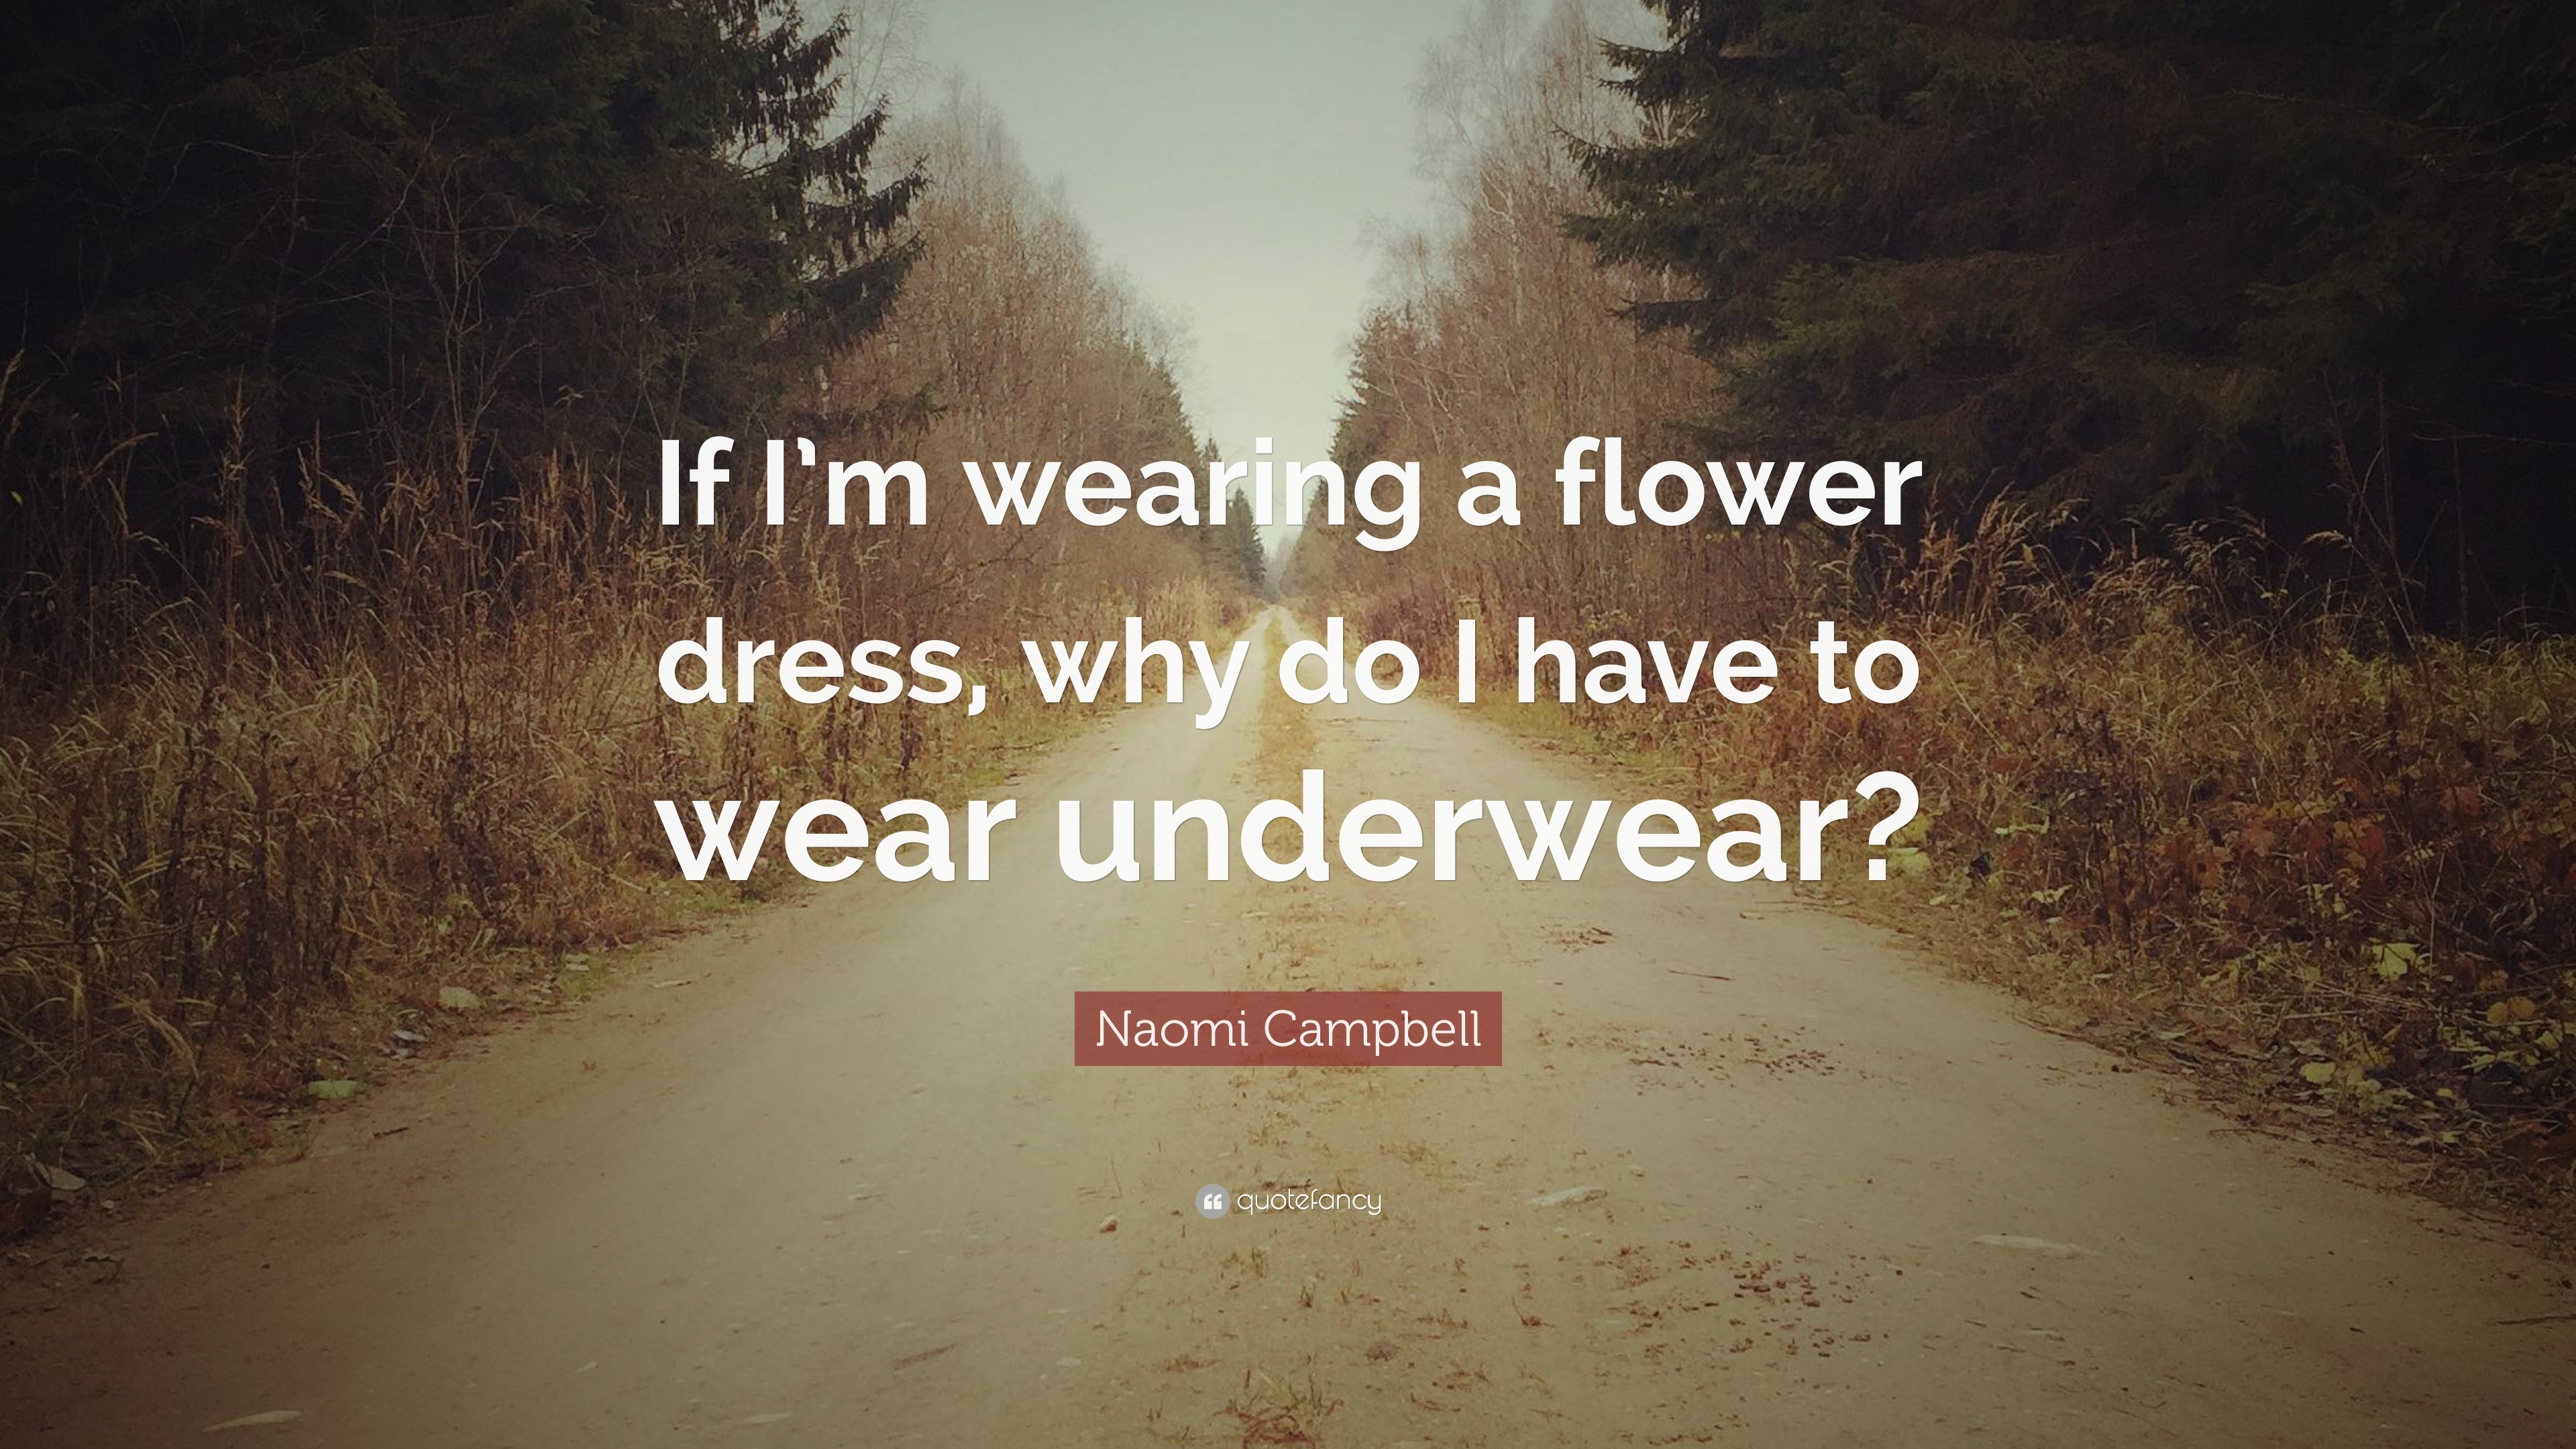 Do I Have to Wear Underwear?